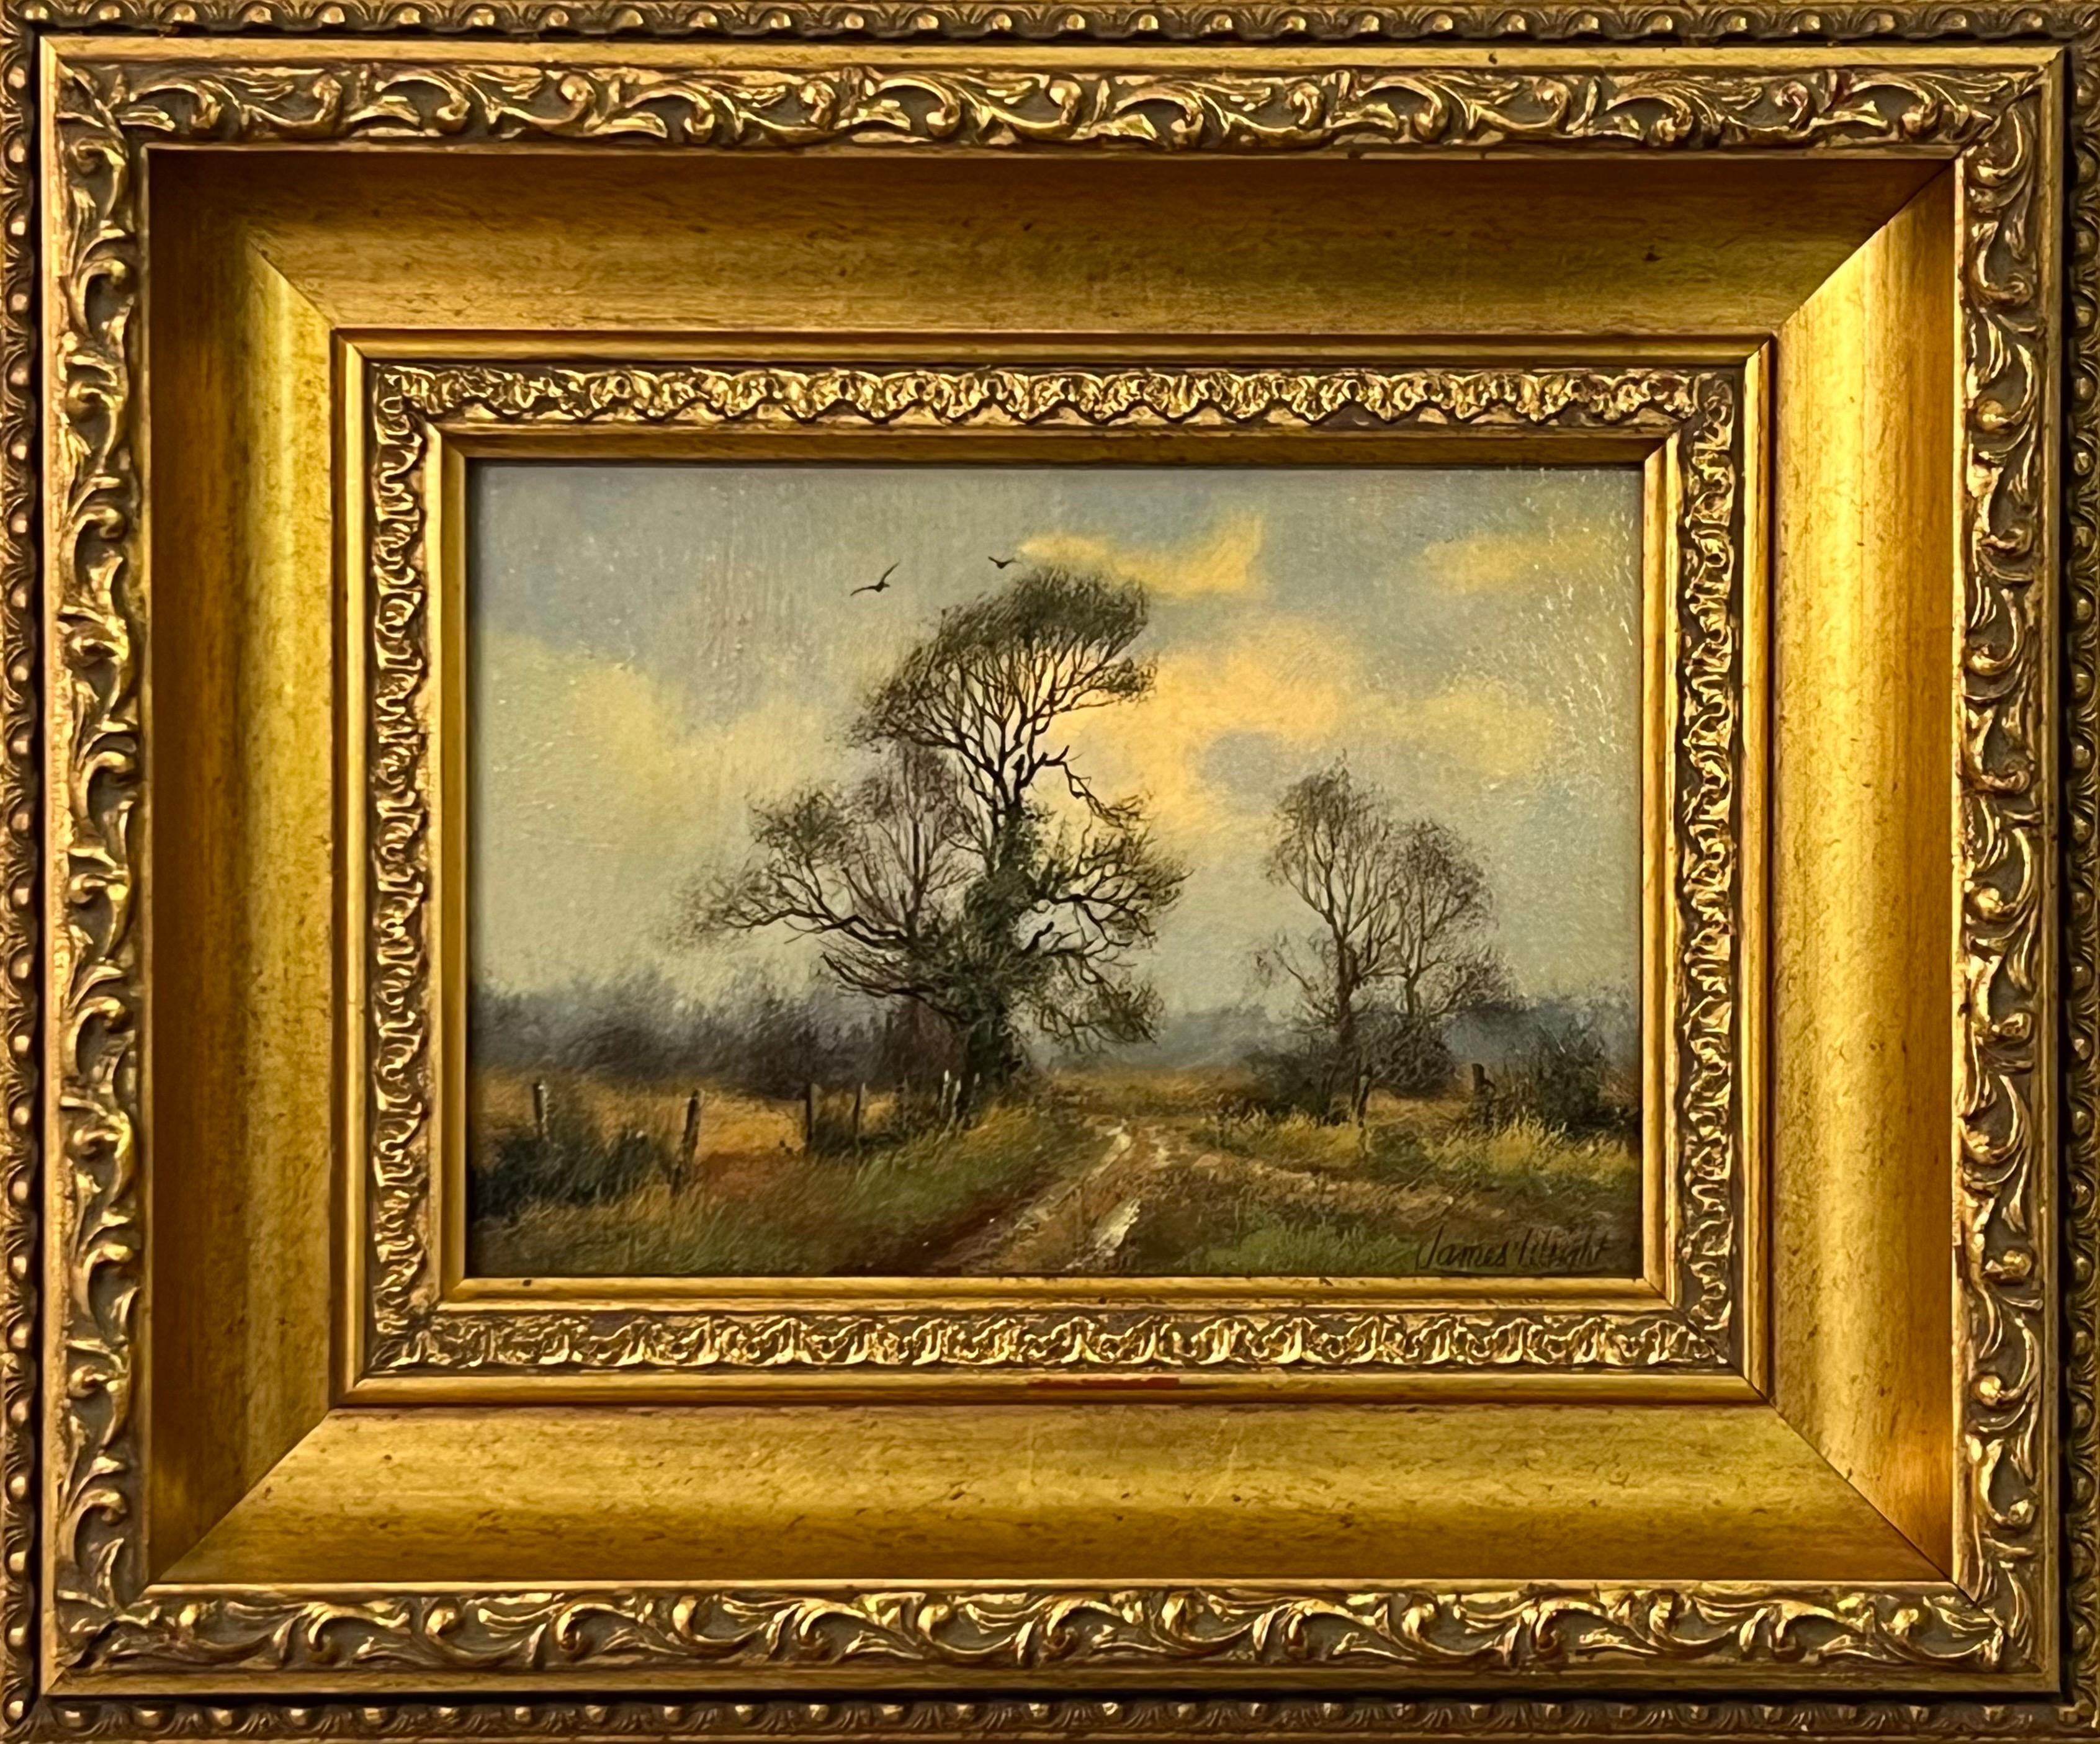 Landscape Painting James Wright - Chemin de campagne avec arbres et oiseaux dans la campagne anglaise par un artiste du 20e siècle